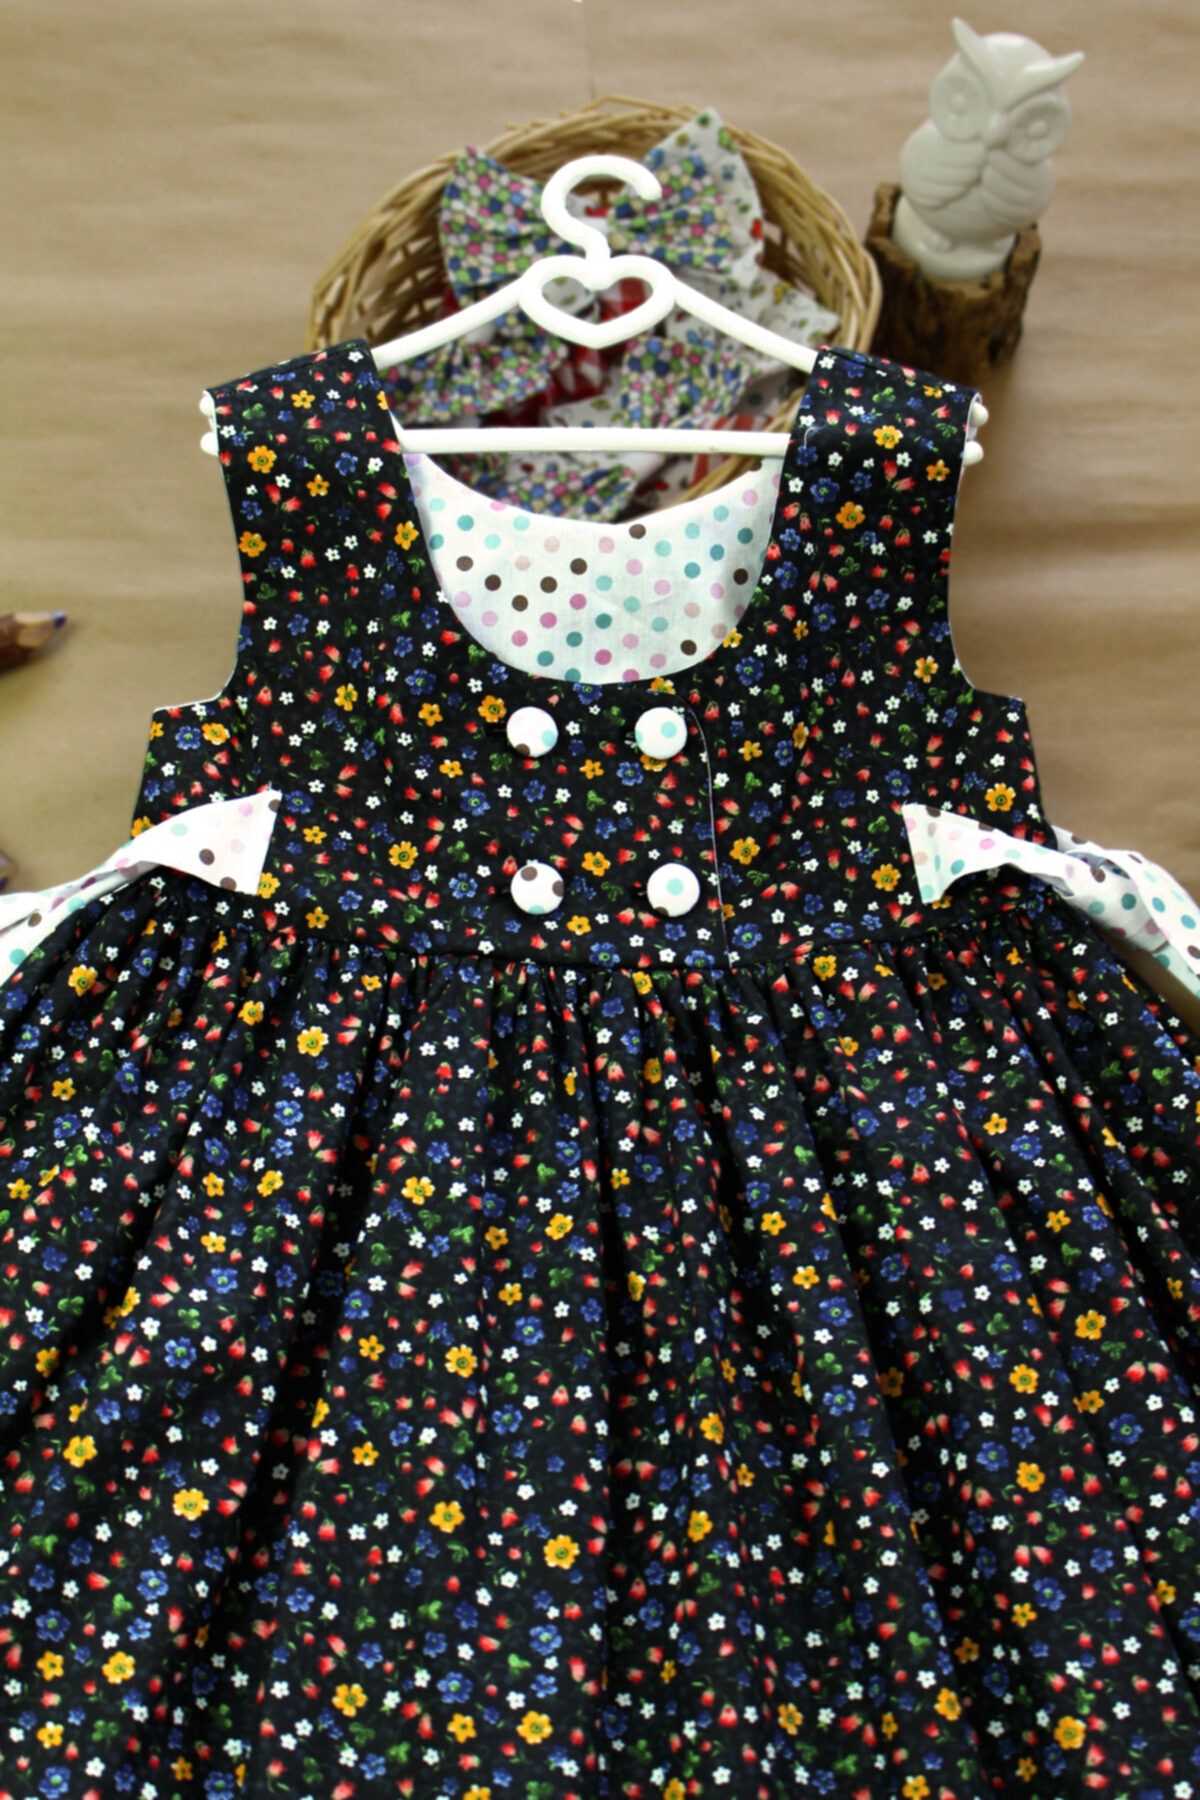 سفارش لباس مجلسی نوزاد دخترانه ارزان شیک addosh رنگ مشکی کد ty111233305